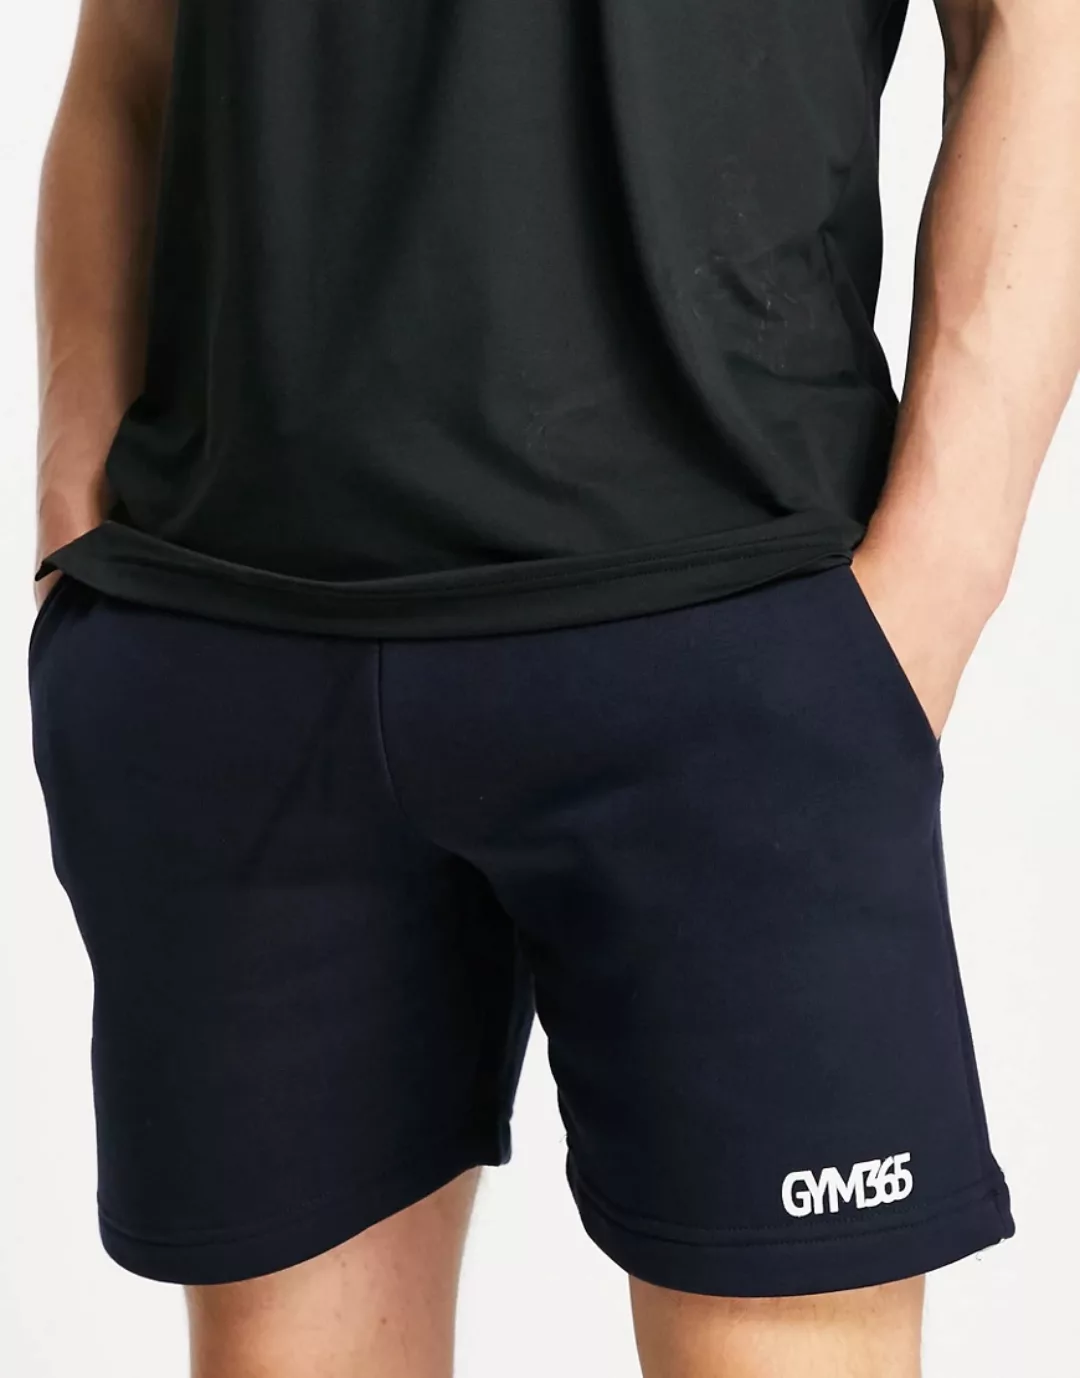 Gym 365 – Jersey-Shorts in Marineblau mit Logo günstig online kaufen